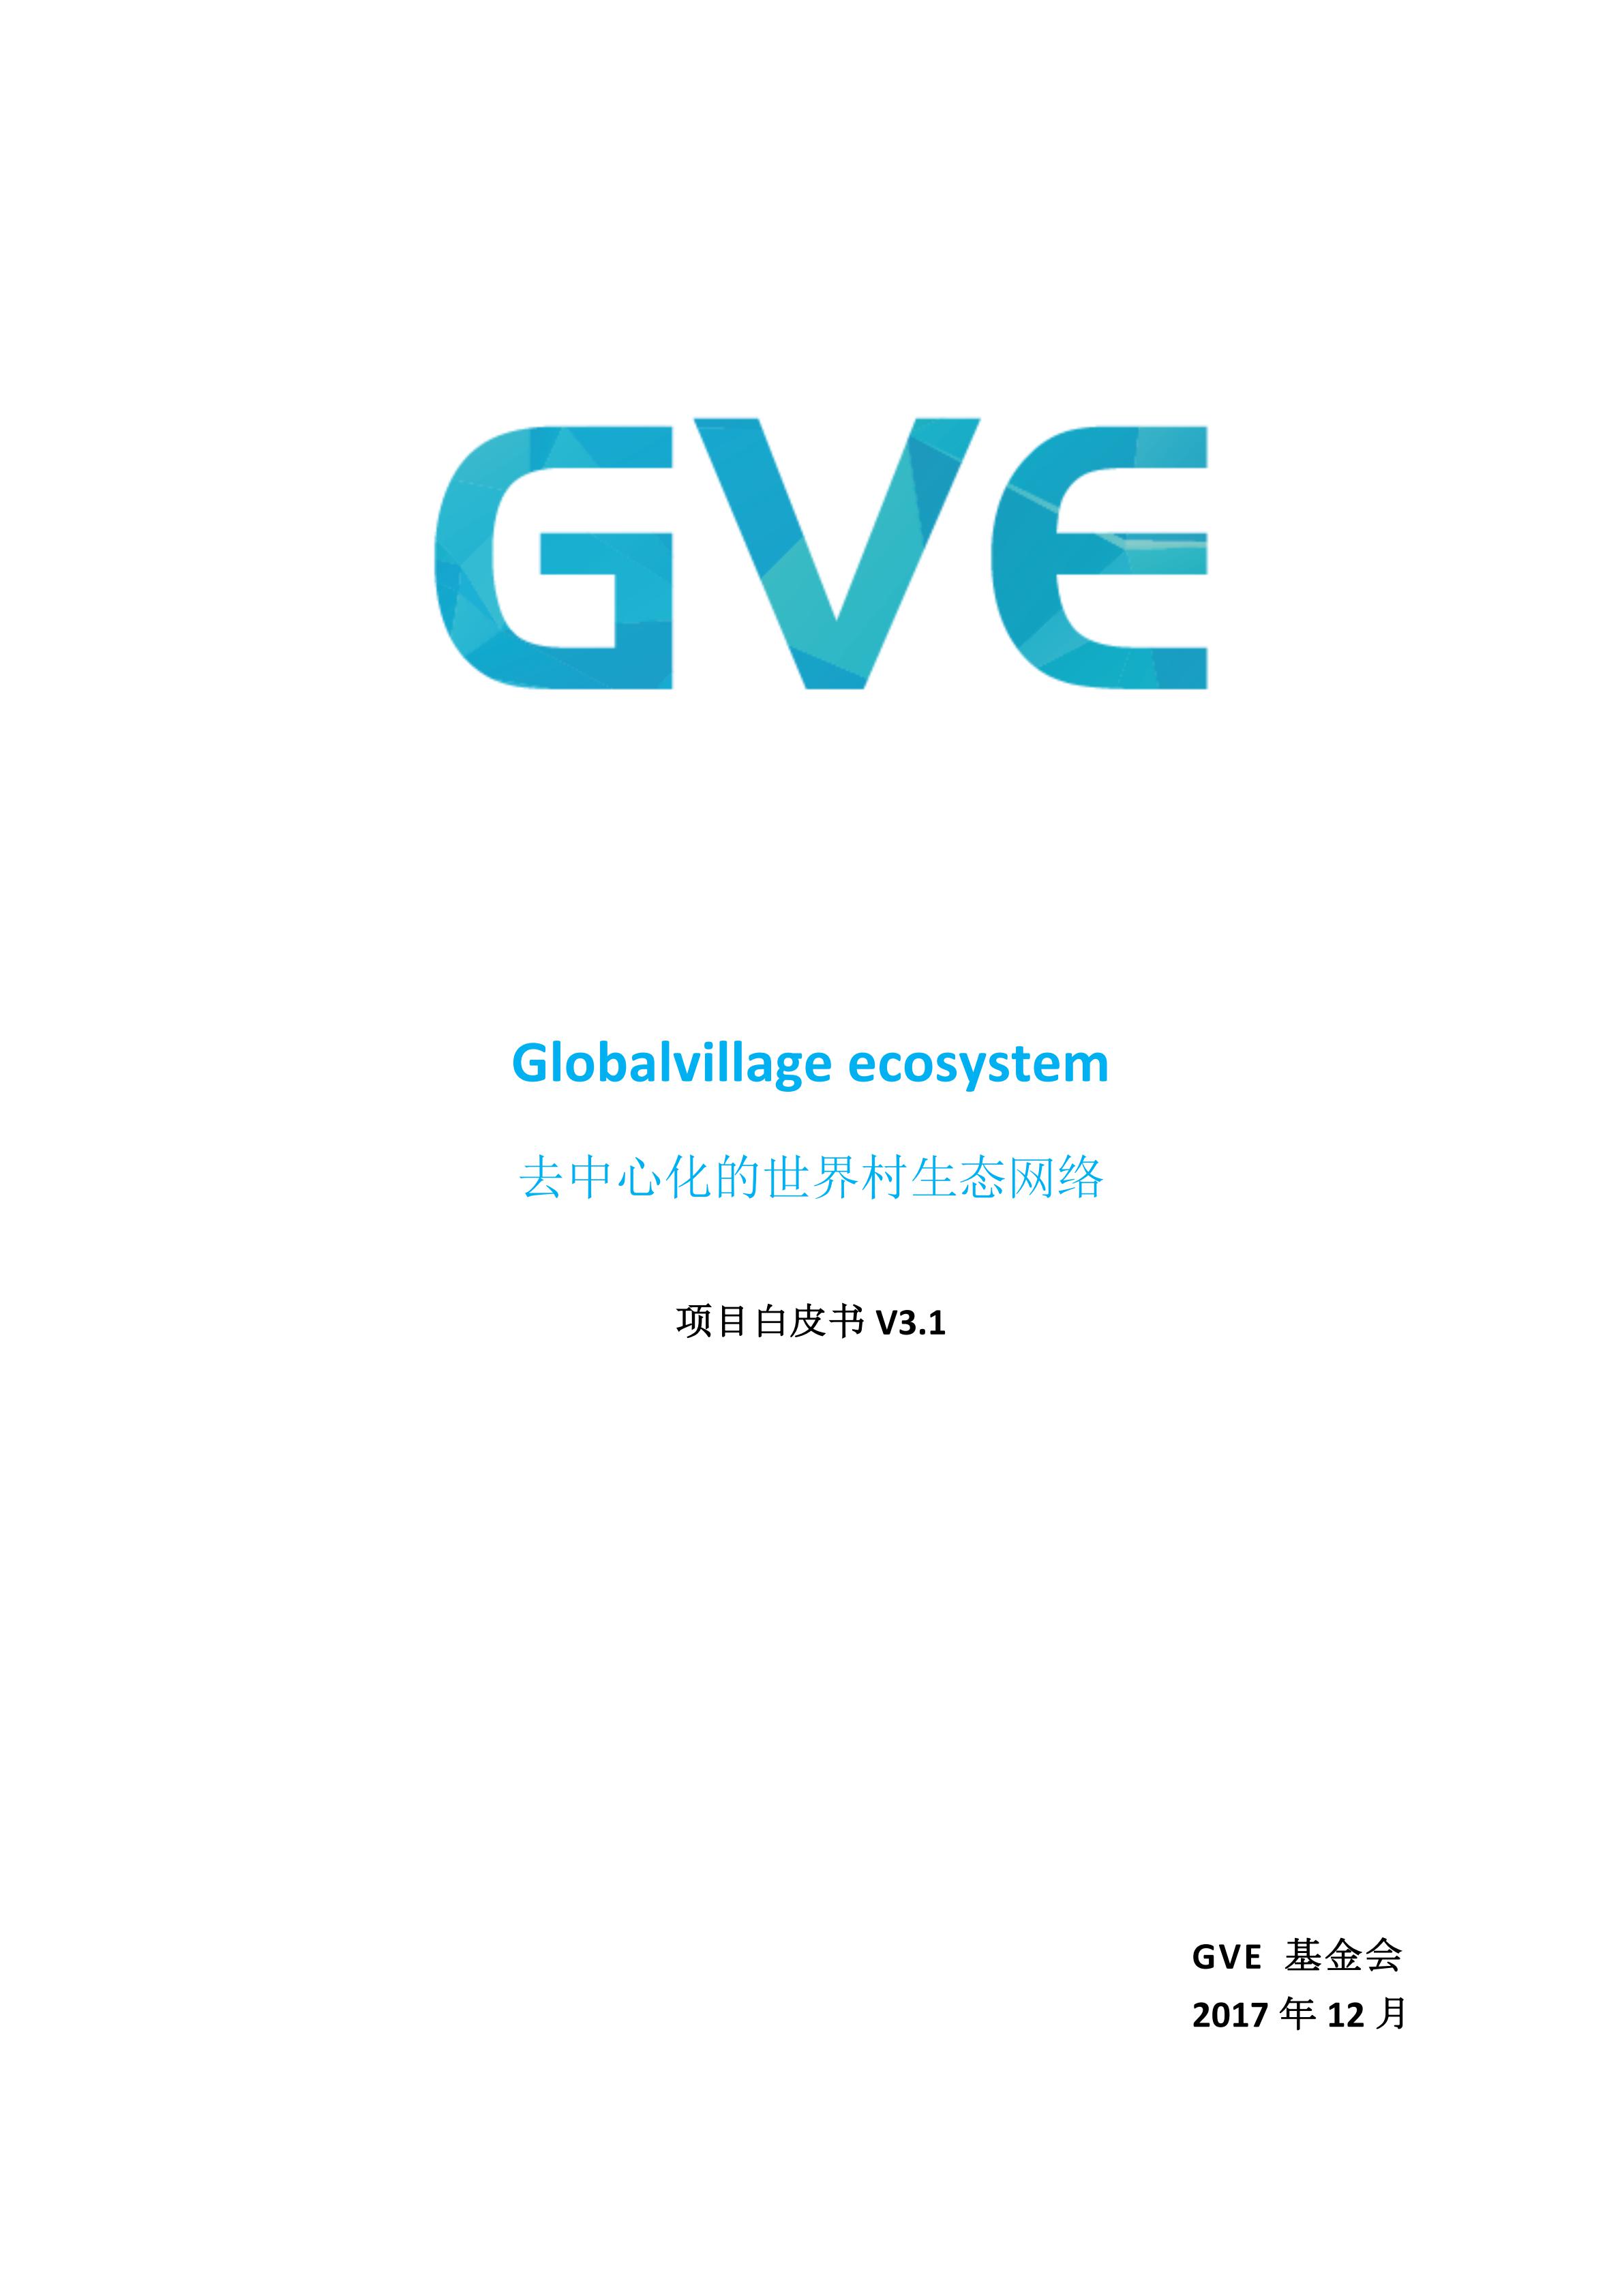 GVE-Whitepaper-cn_00.jpg